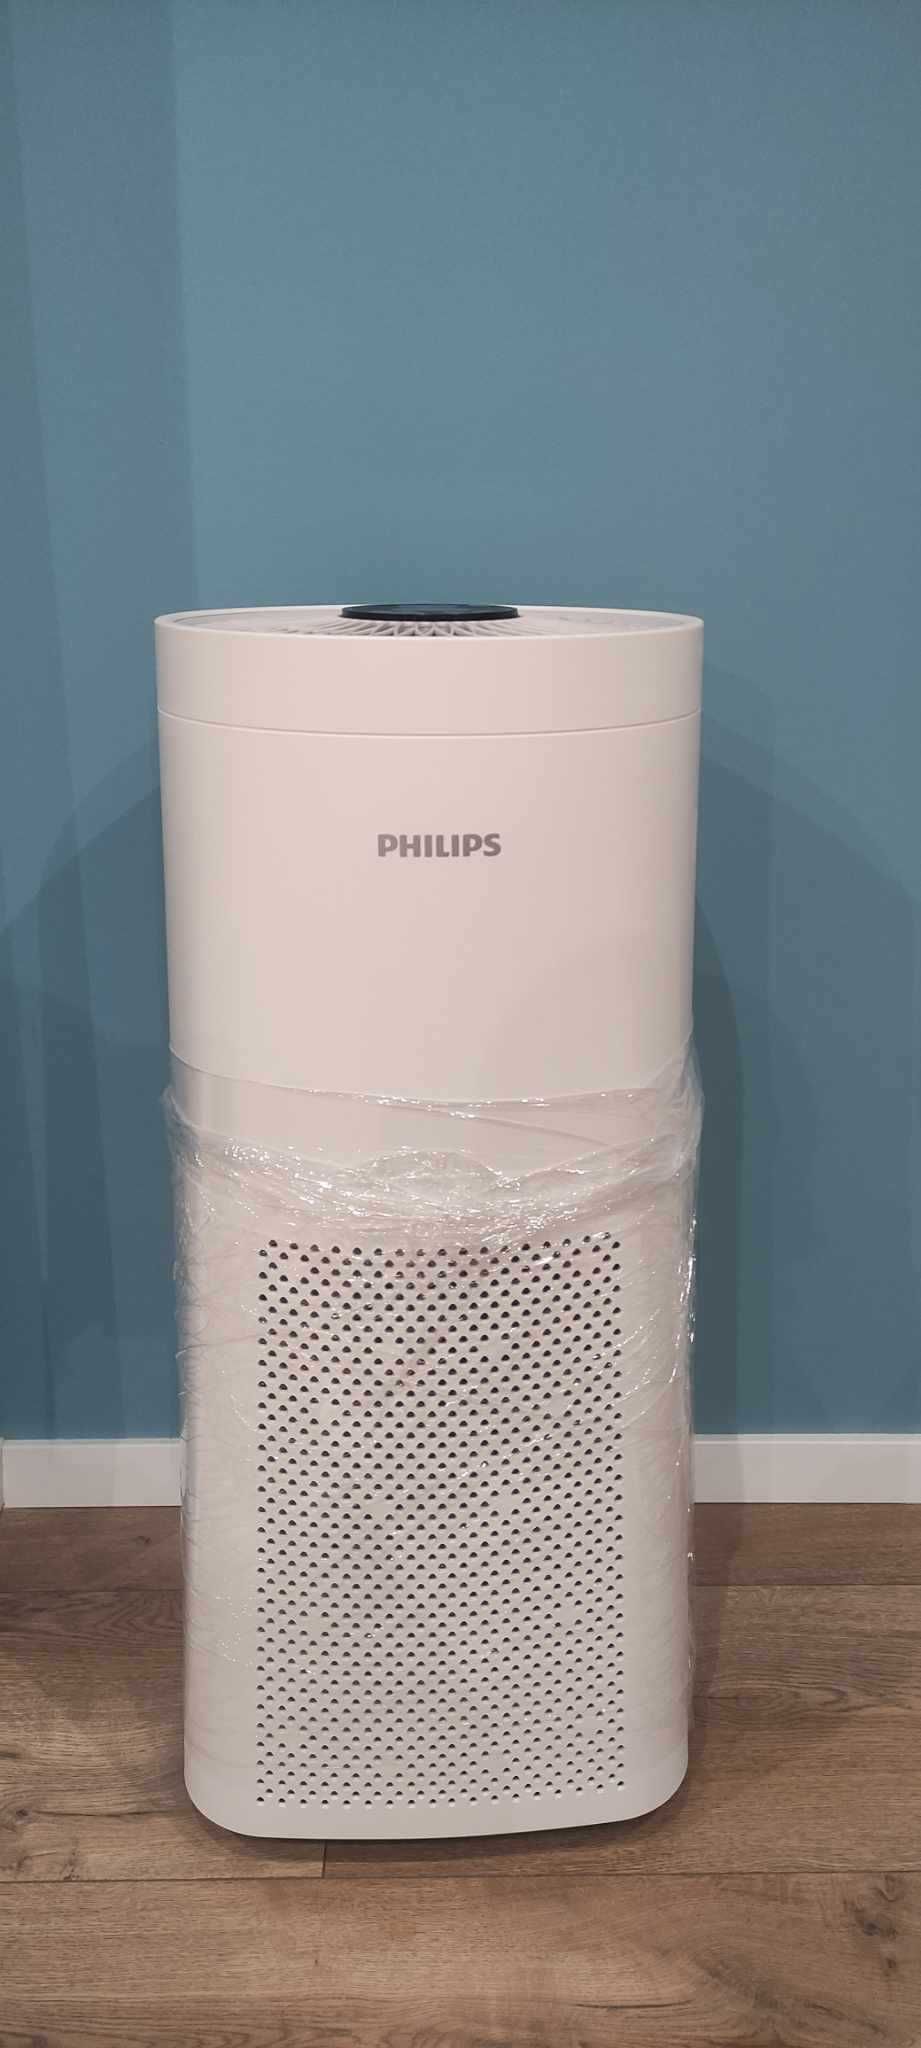 Oczyszczacz powietrza Philips moduł podłogowy uv-c